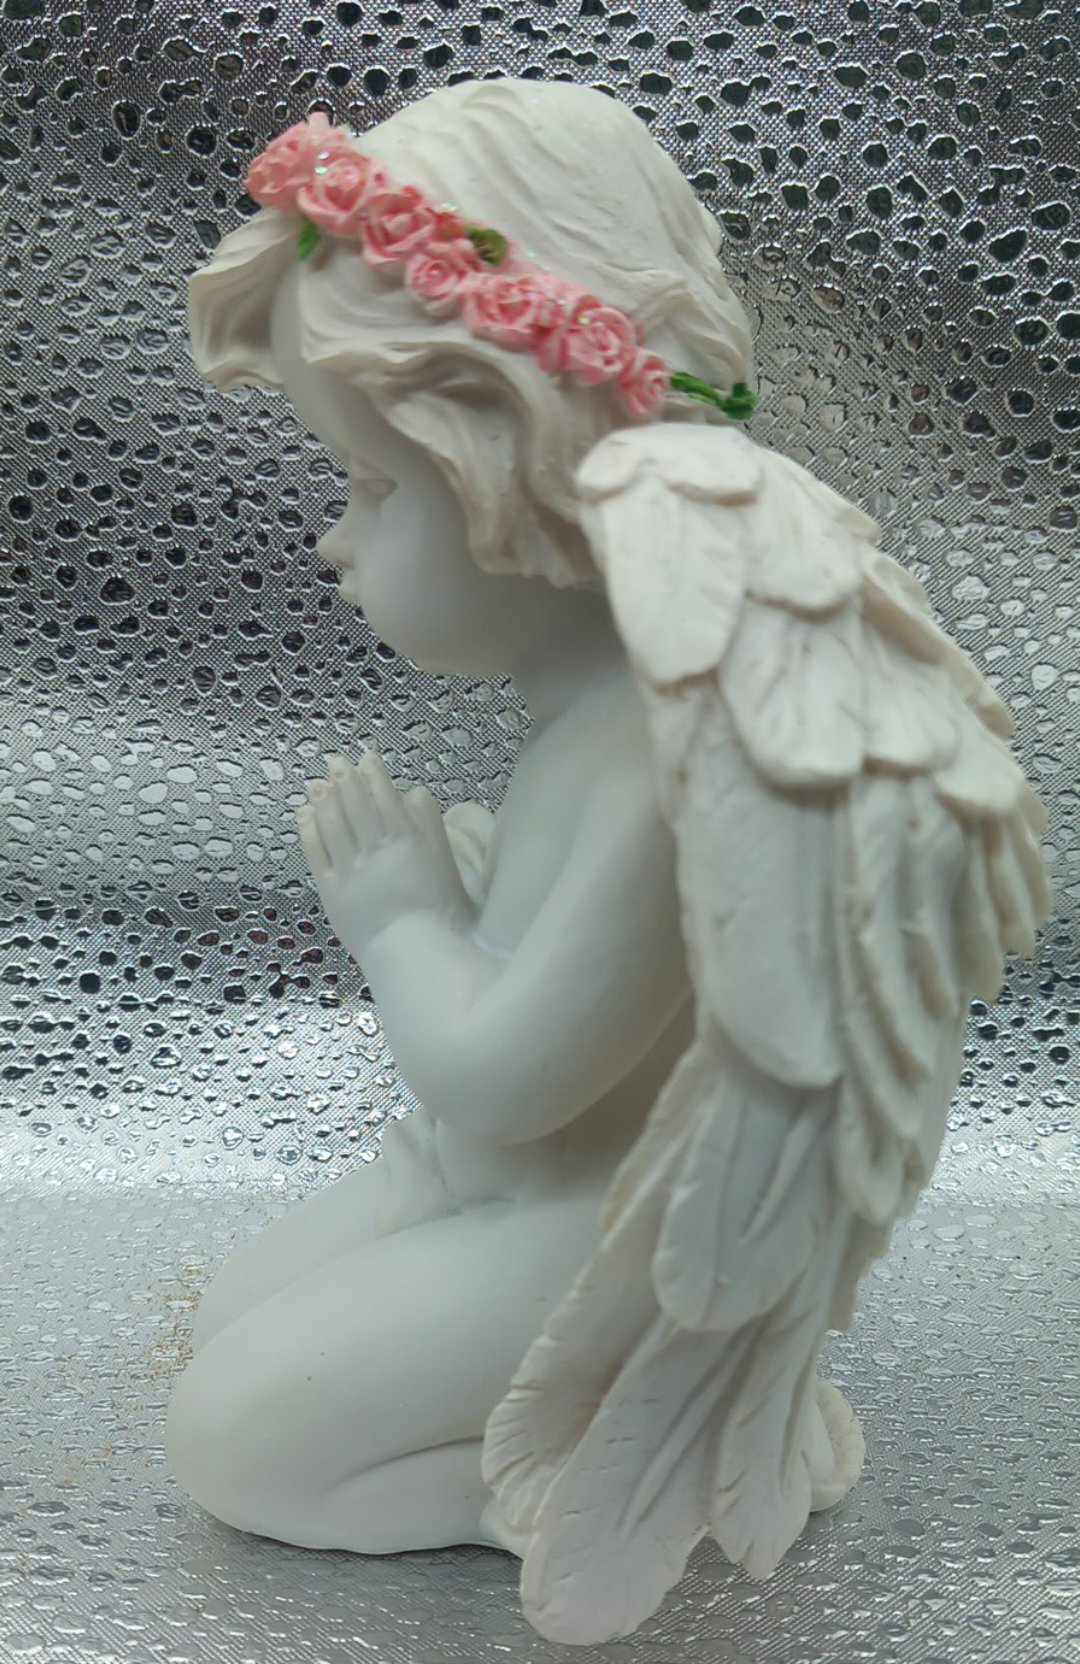 Engel med rosenkrans